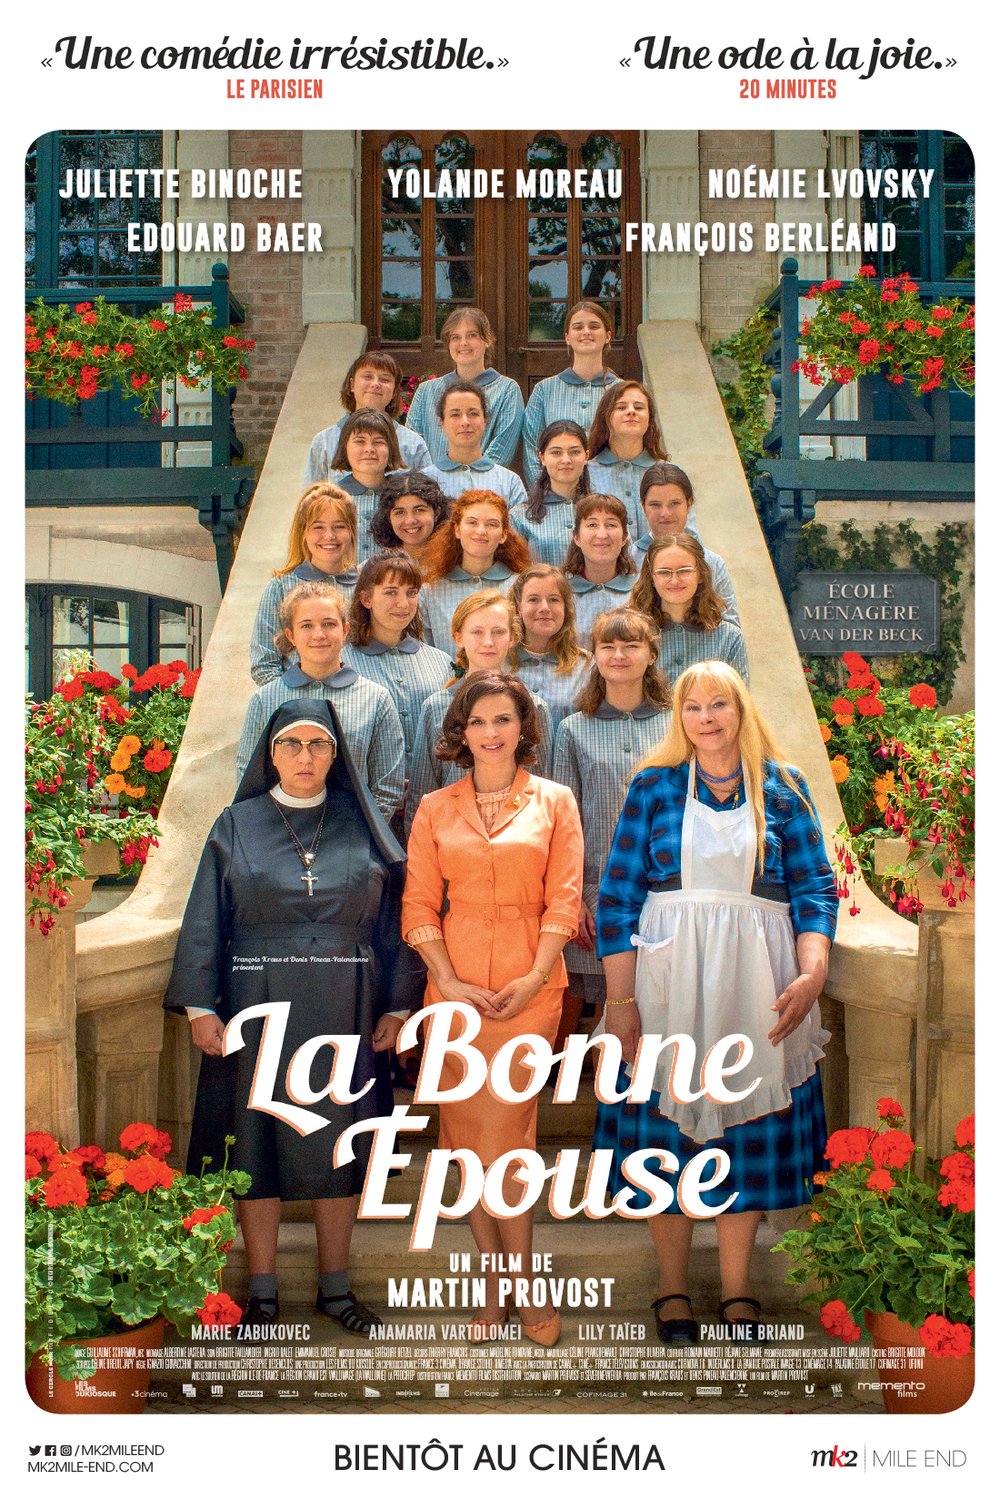 Poster of the movie La Bonne Épouse